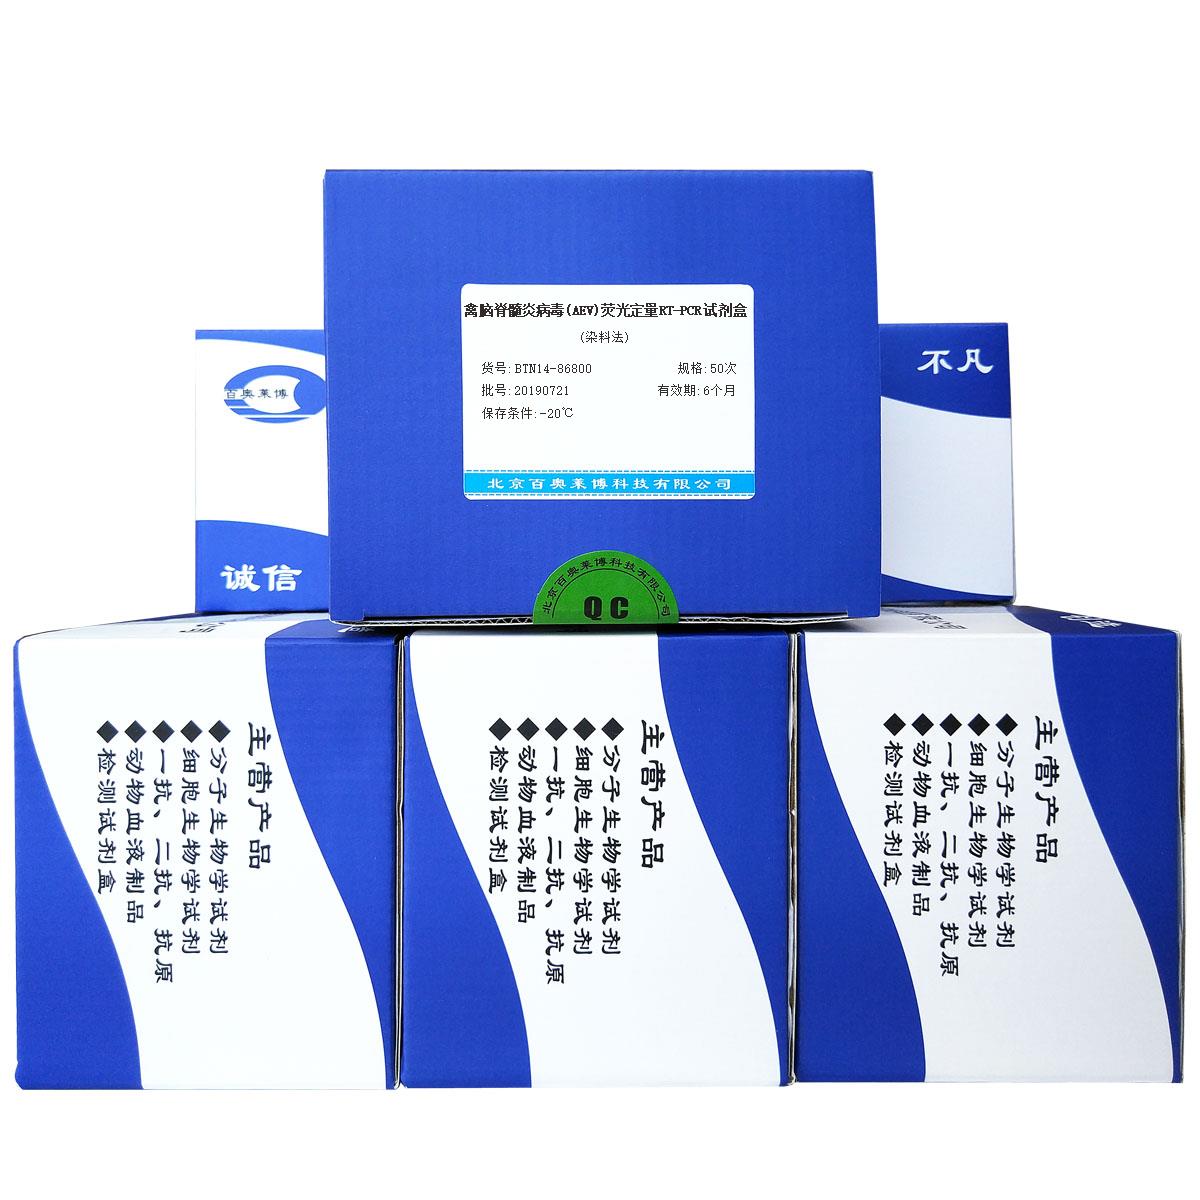 禽脑脊髓炎病毒(AEV)荧光定量RT-PCR试剂盒(染料法)